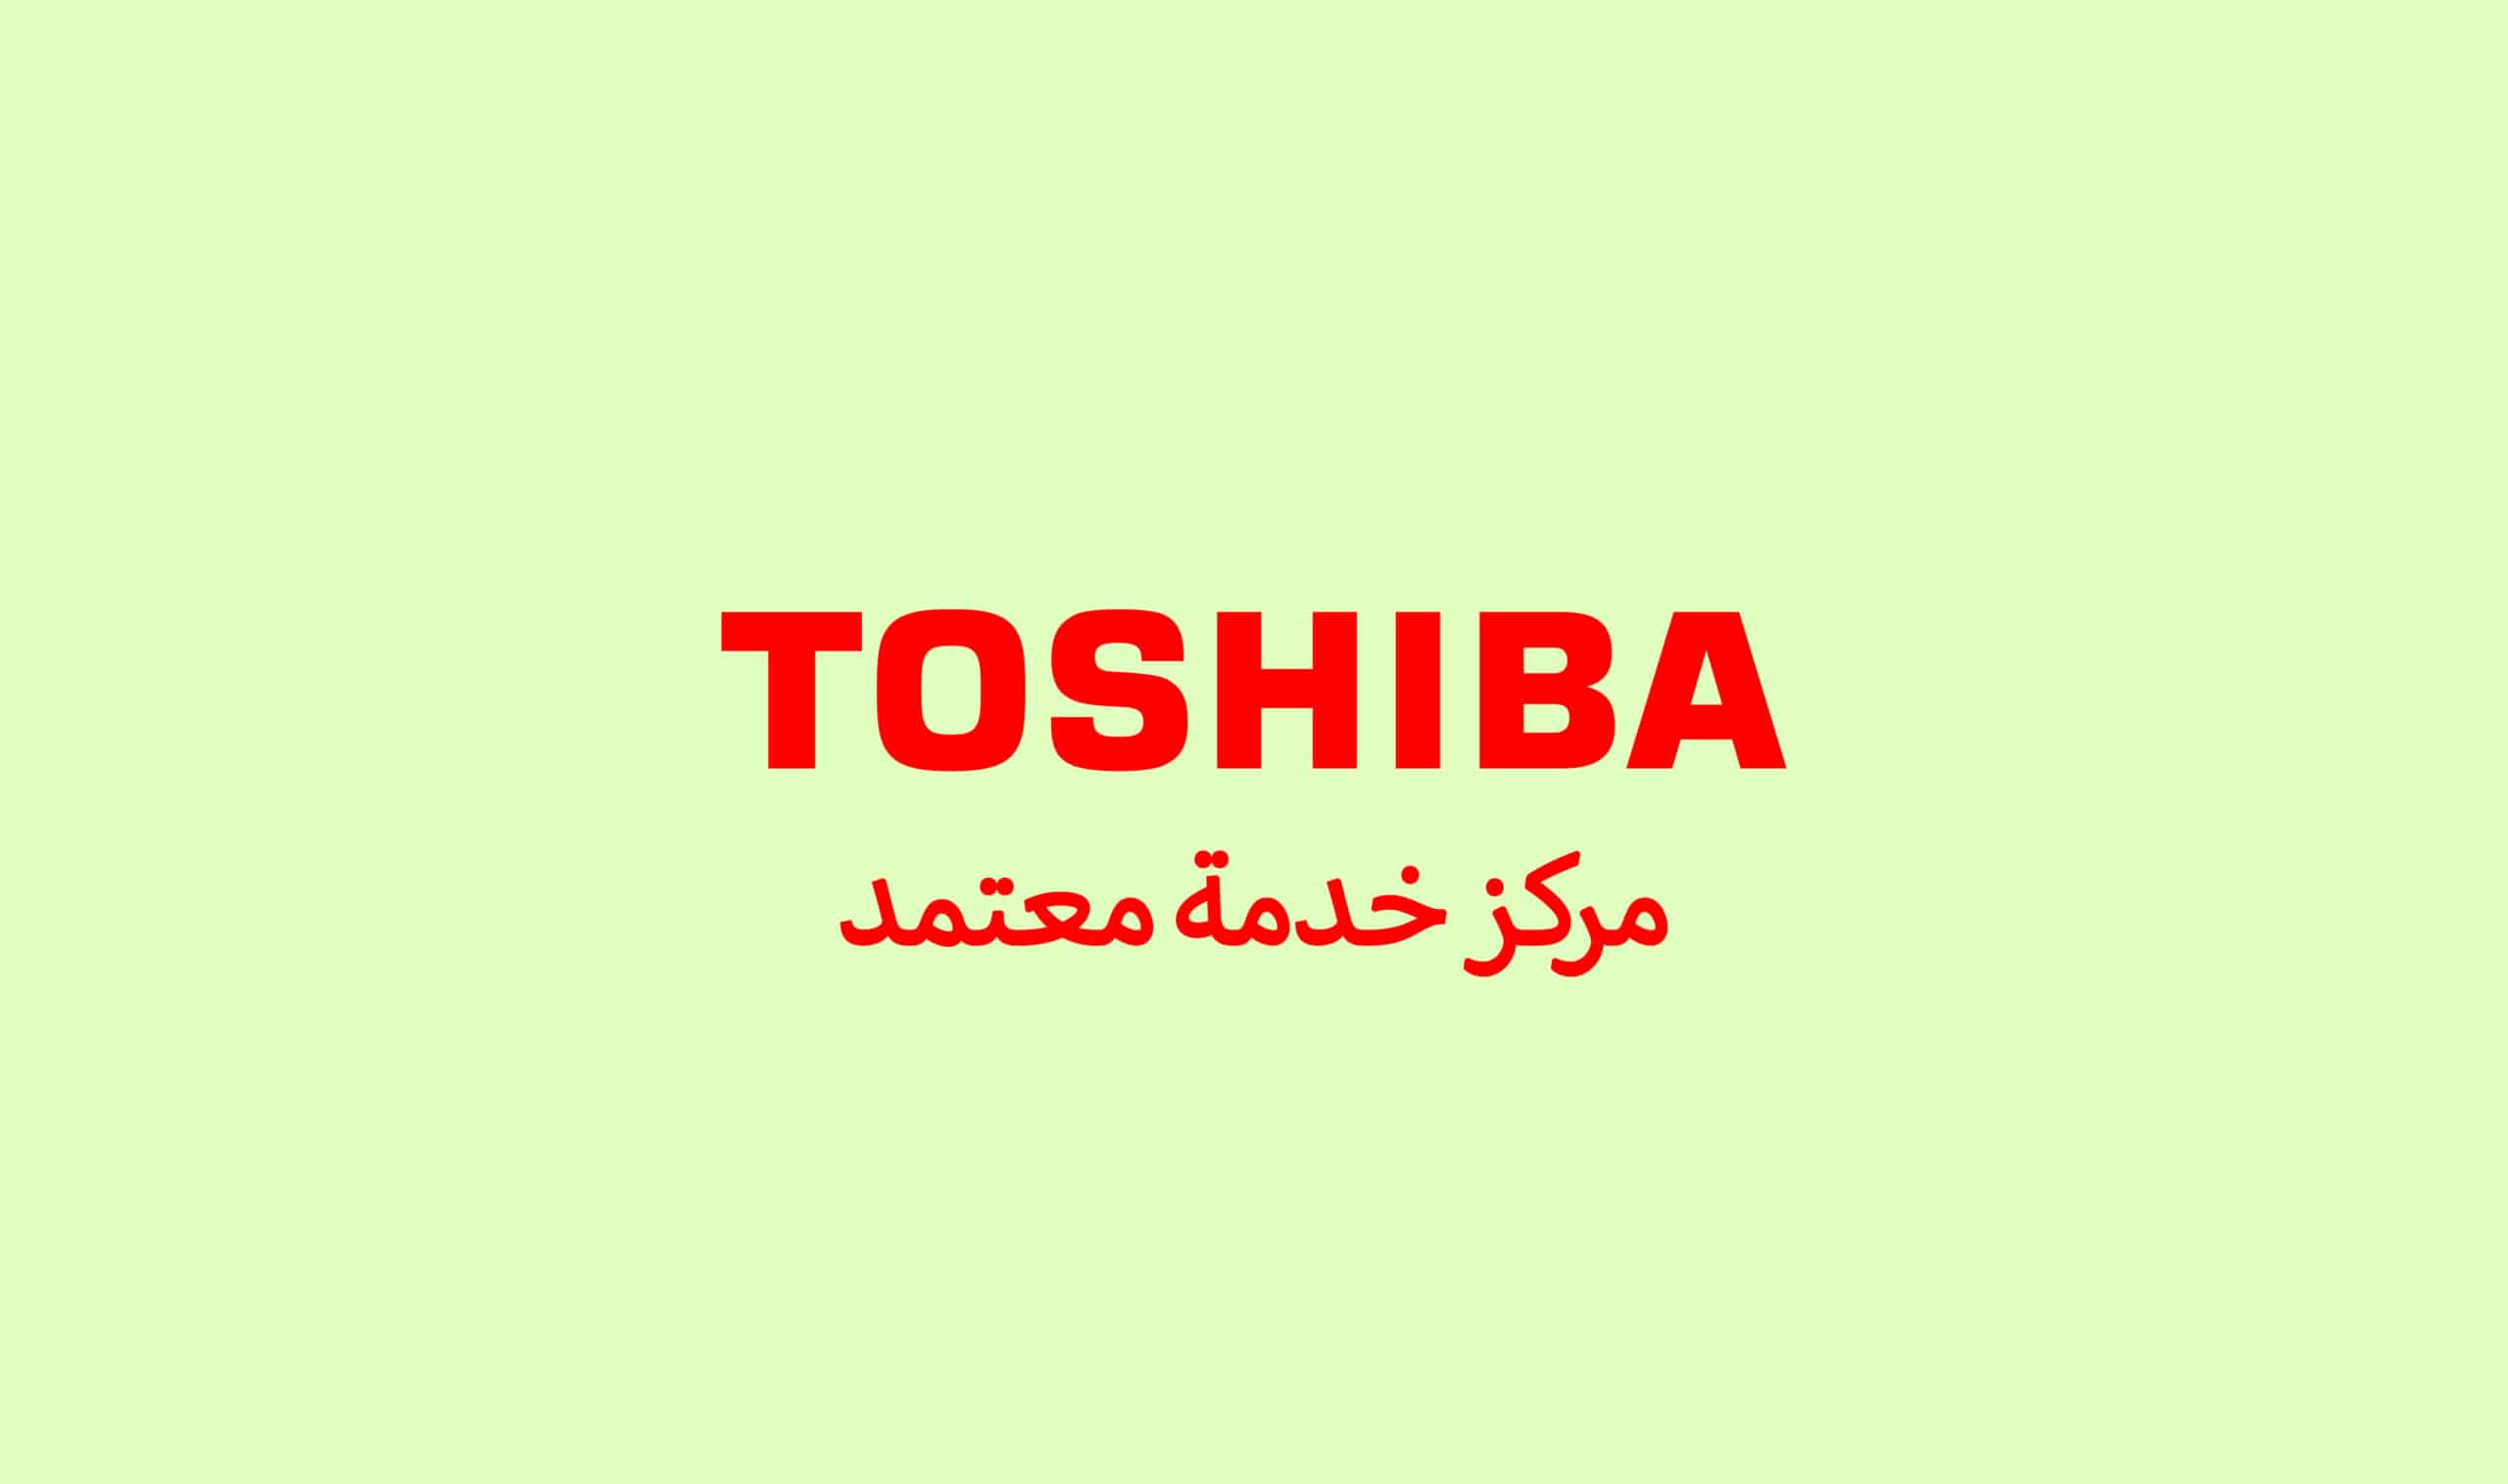 رقم خدمة العملاء توشيبا الاسكندرية 01017556655